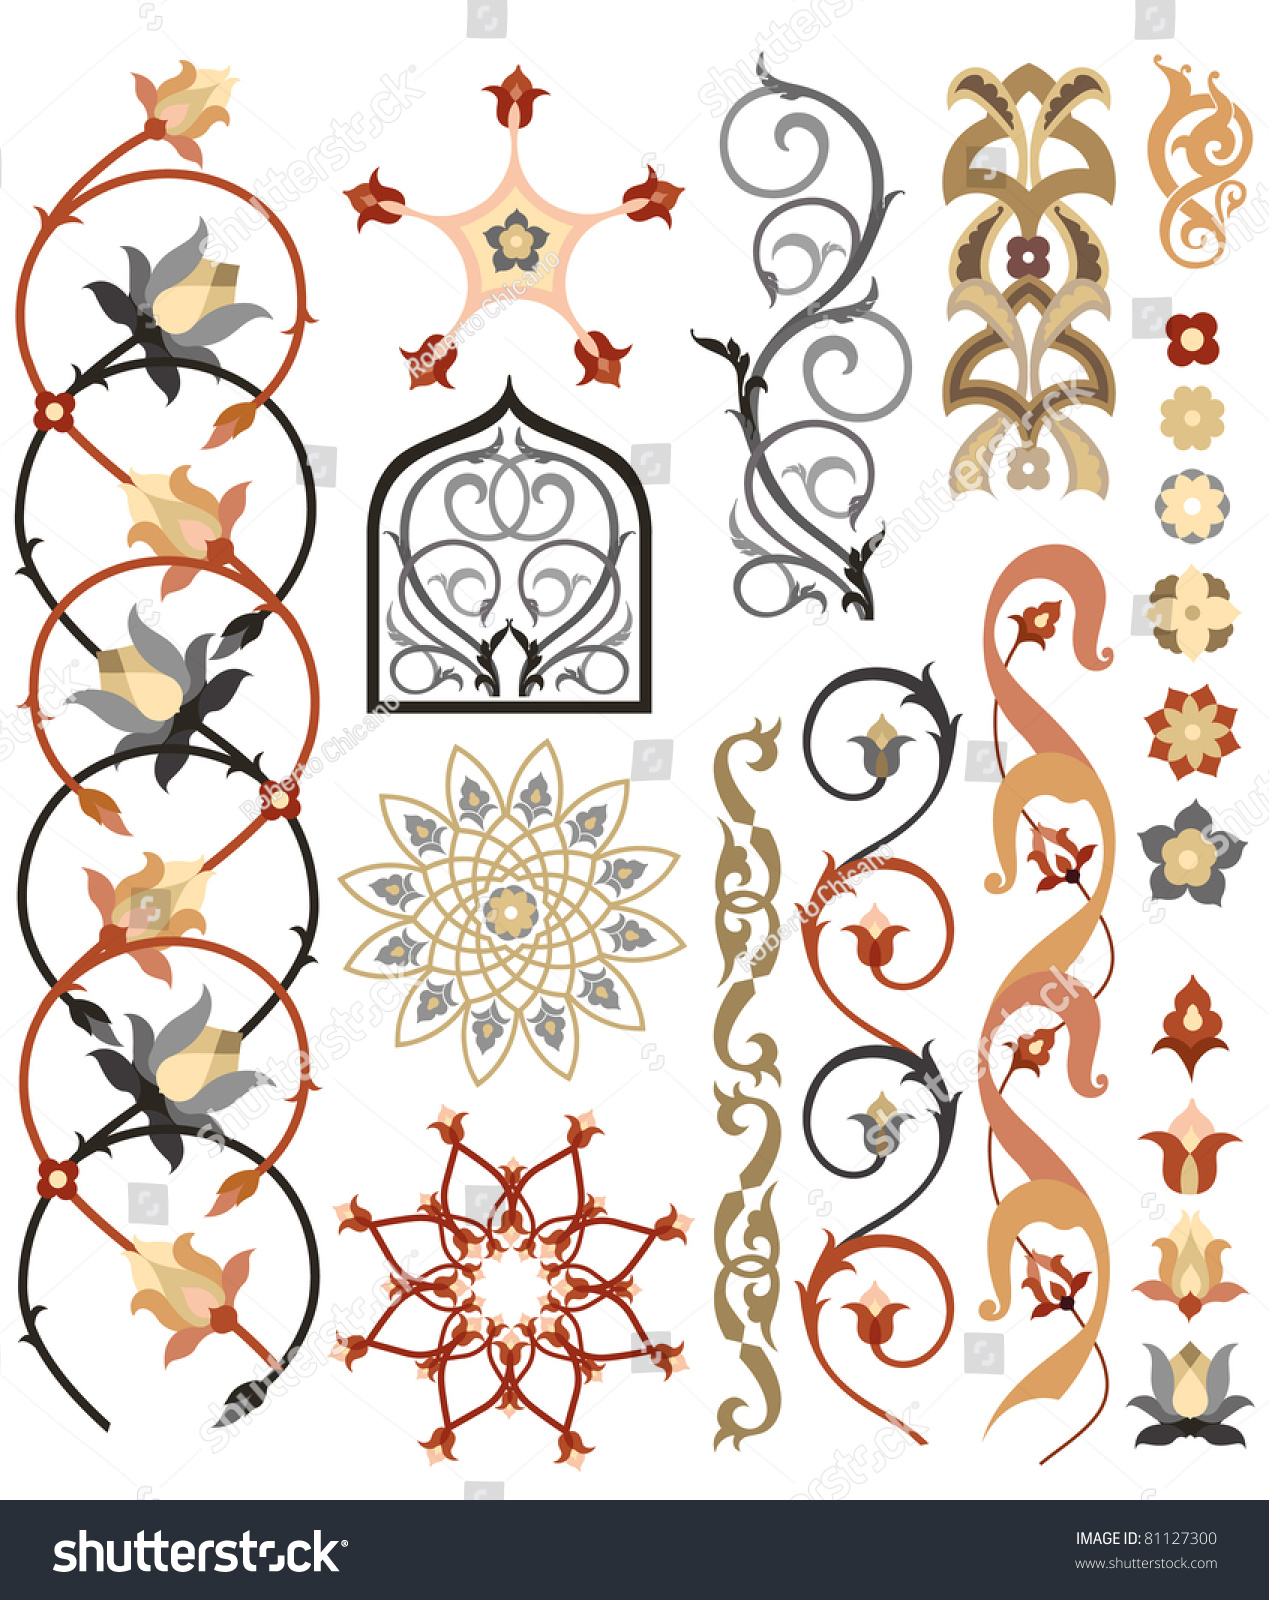 Детали для церковного орнамента